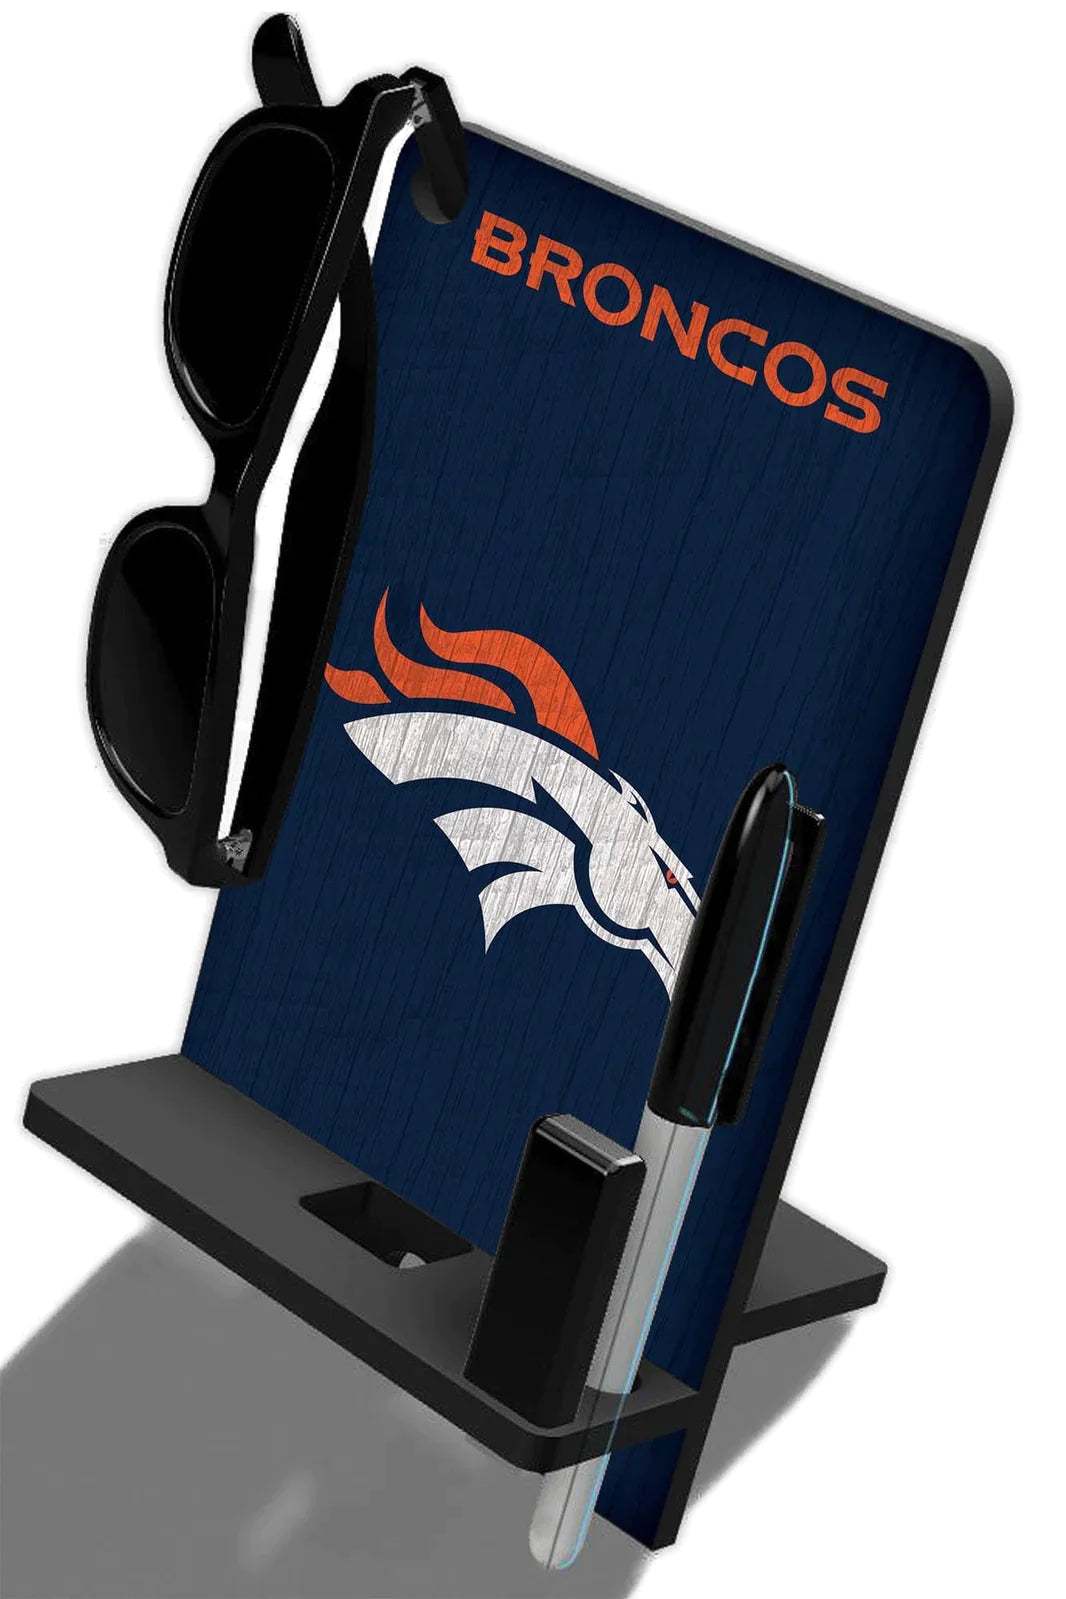 Base de escritorio para Celular Phone Stand NFL Broncos